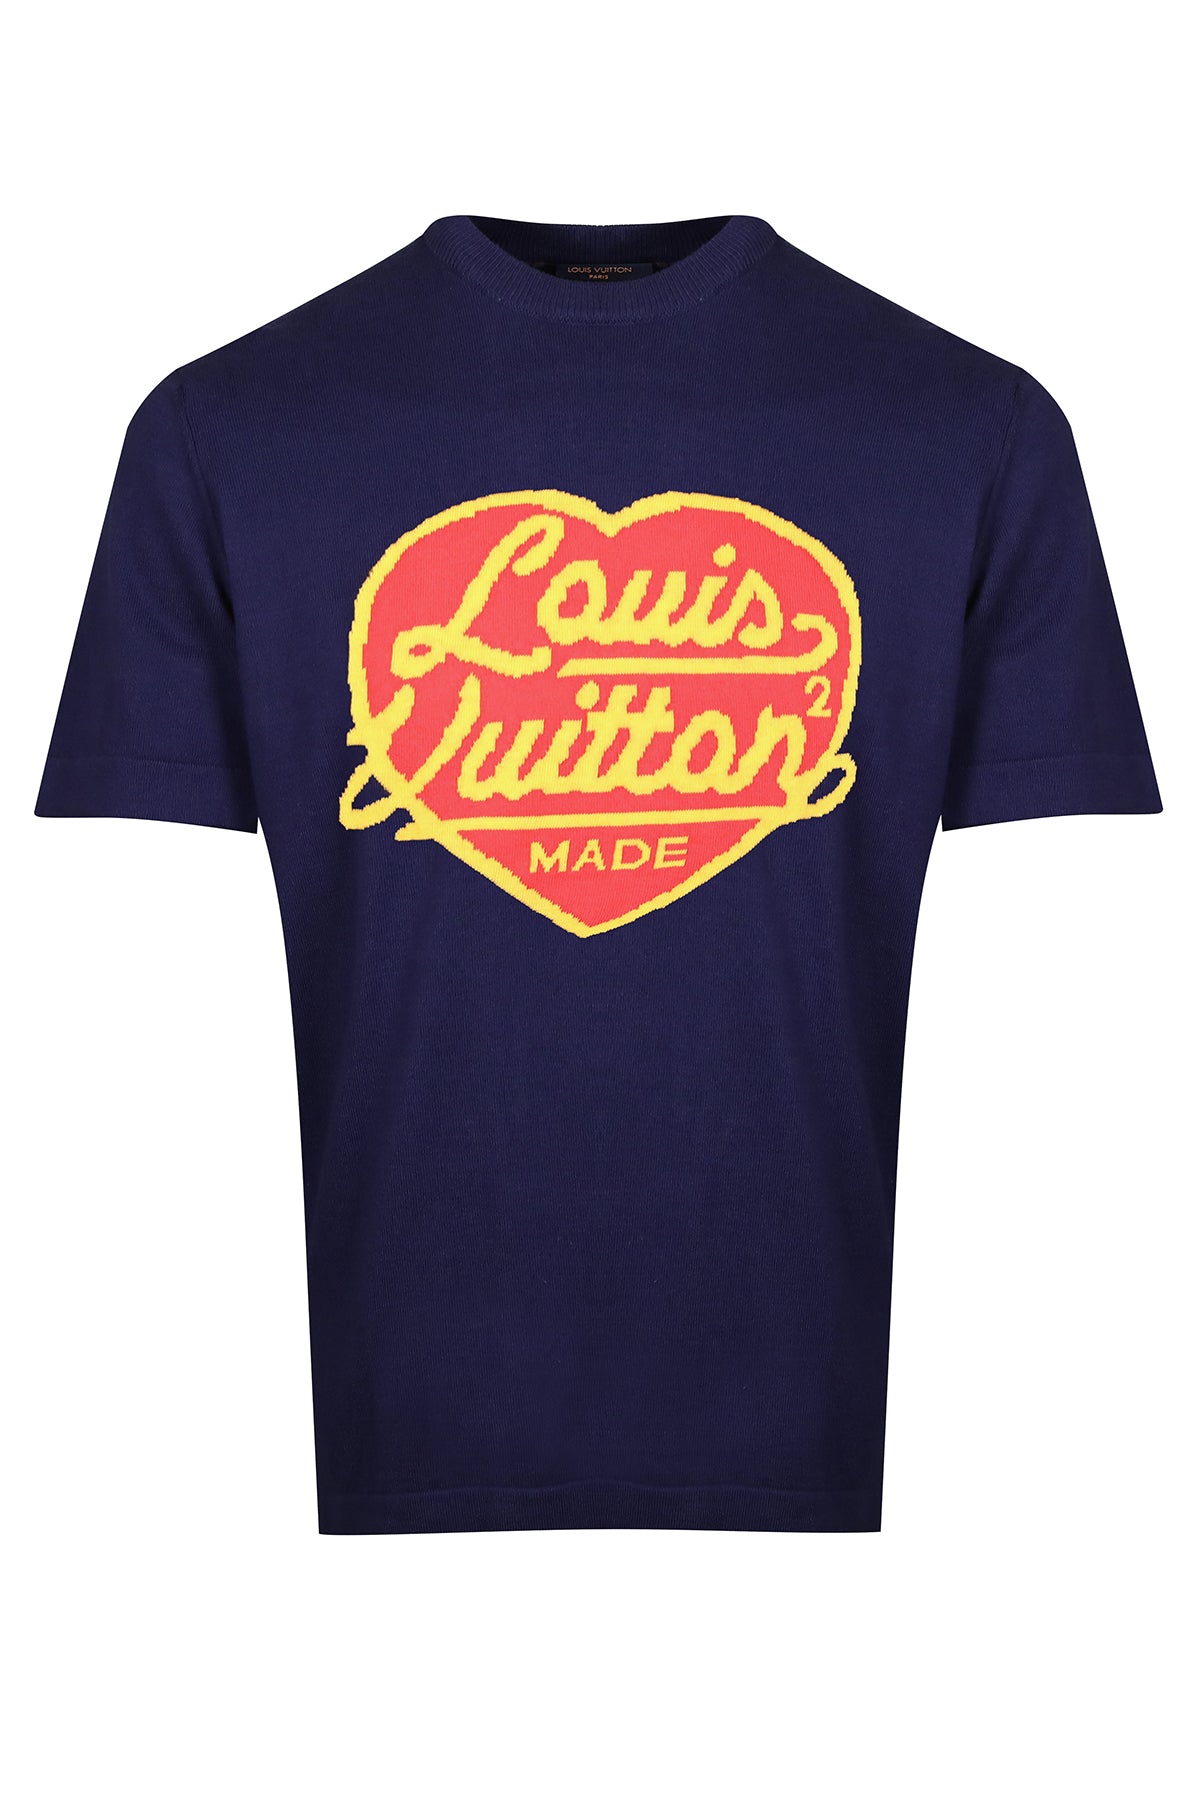 colorful LV heart t-shirt  Shirts, Louis vuitton t shirt, T shirt